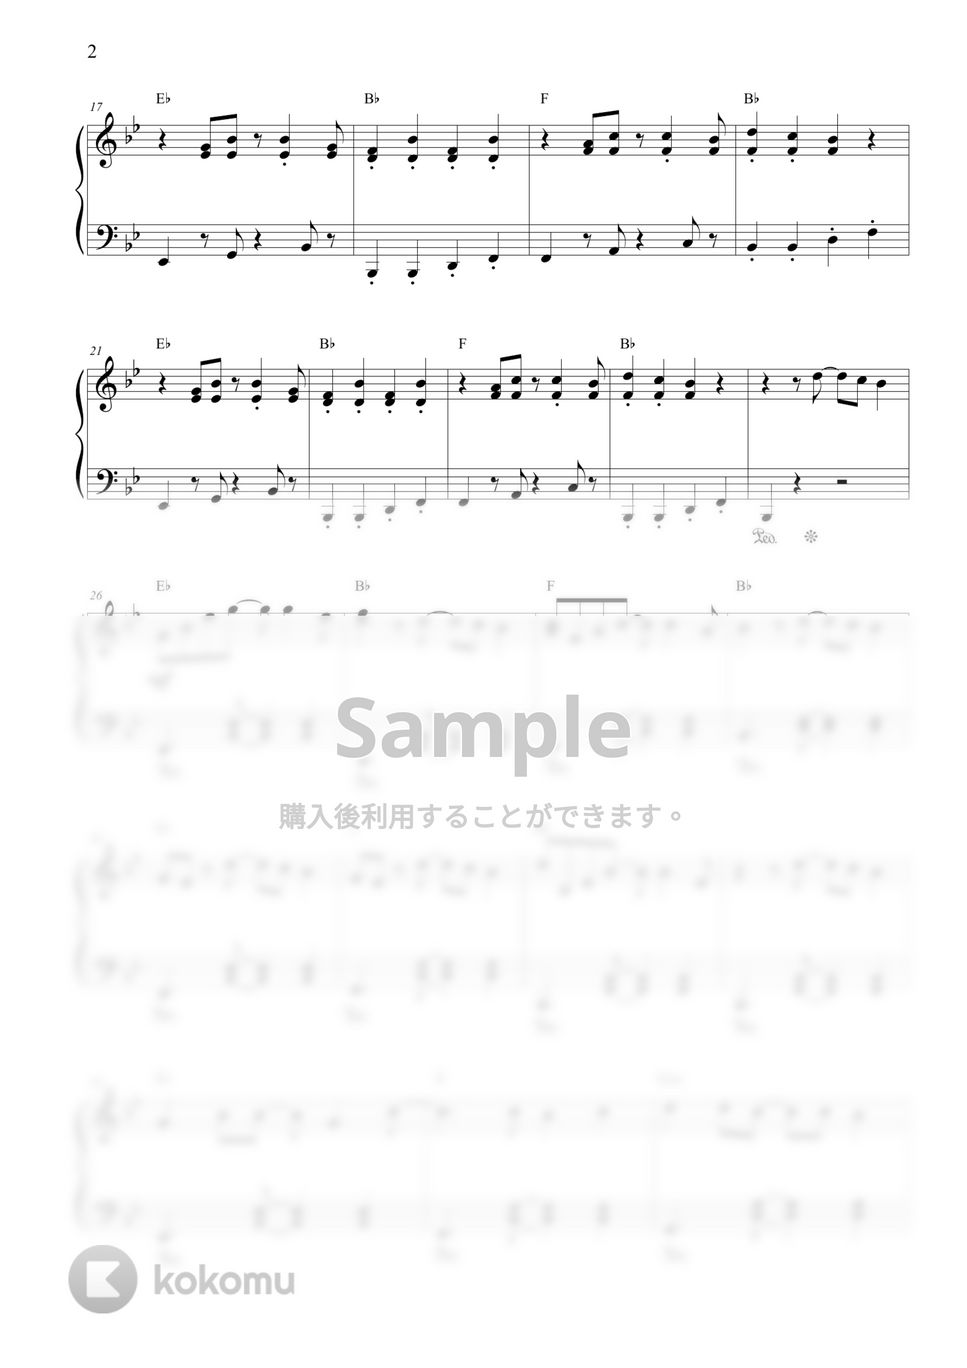 リトルマーメイド - アンダー・ザ・シー (中級) by CANACANA family